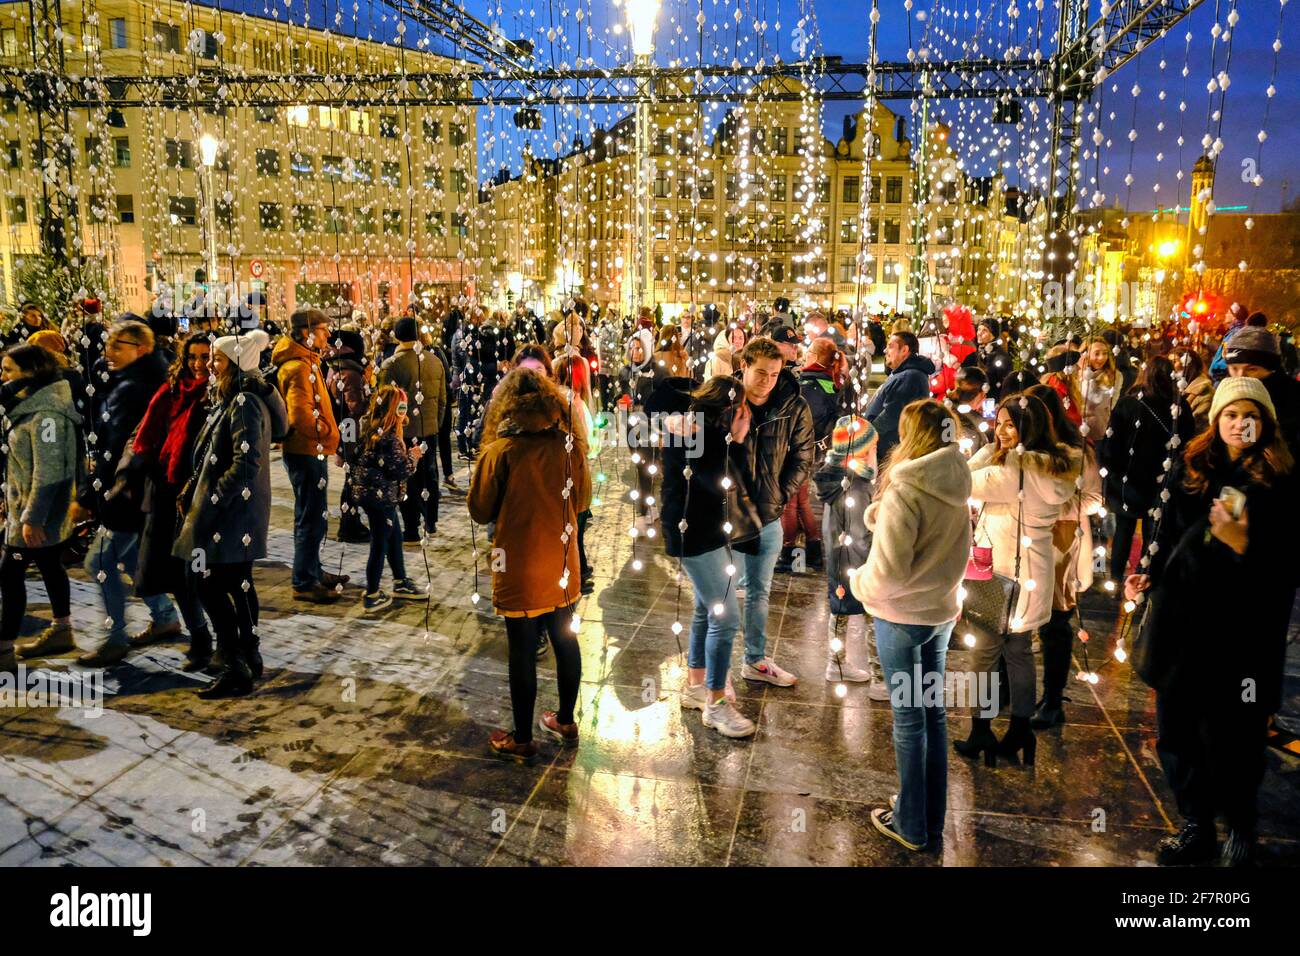 14.12.2019, Bruessel, Belgien - Touristen in einer Lichtinstallation in der Vorweihnachtszeit in Bruessel an der Place de l´ Albertine Stock Photo